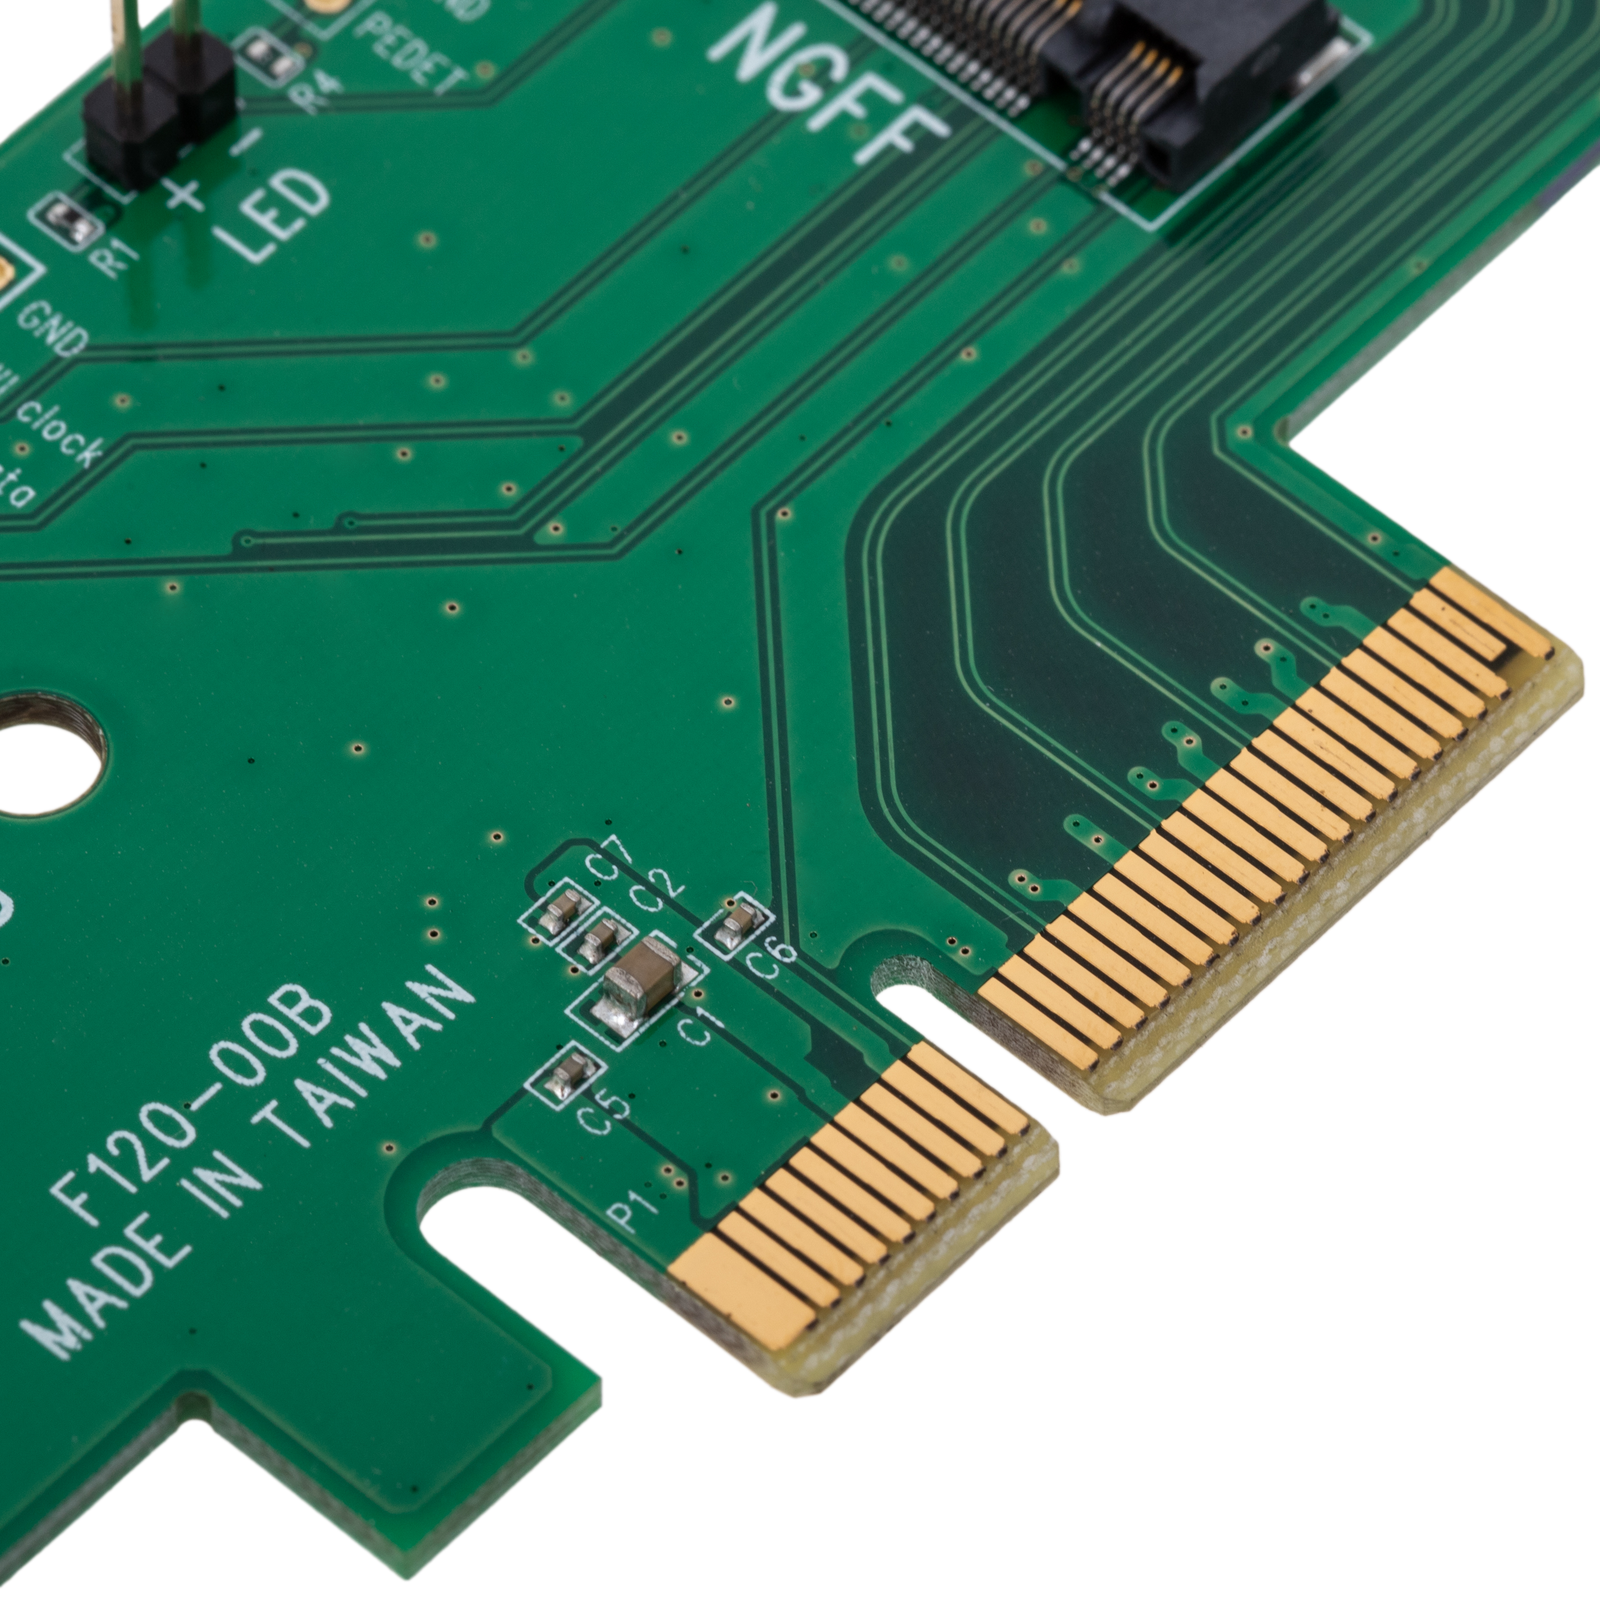 CARTE PCI EXPRESS POUR 2 DISQUES NVME + M.2 ARGUS (KT015)